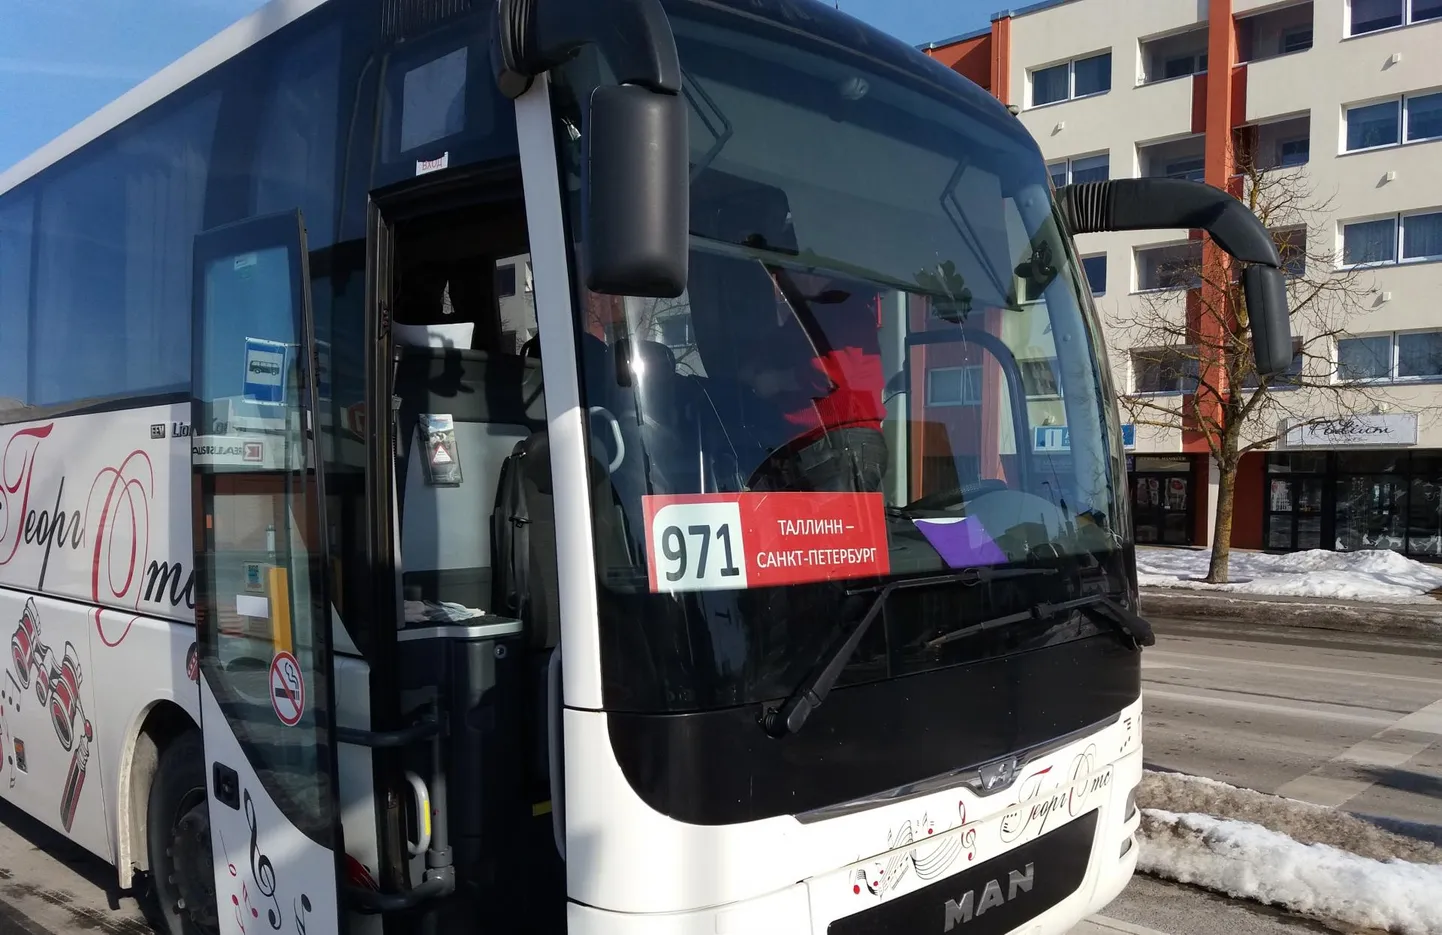 Läinud nädalavahetusel Rakverre jõudnud Vene bussifirma Tallinna–Peterburi buss oli tühi, kuid sohvri kinnitusel on see vastupidises suunas sõites puupüsti täis.